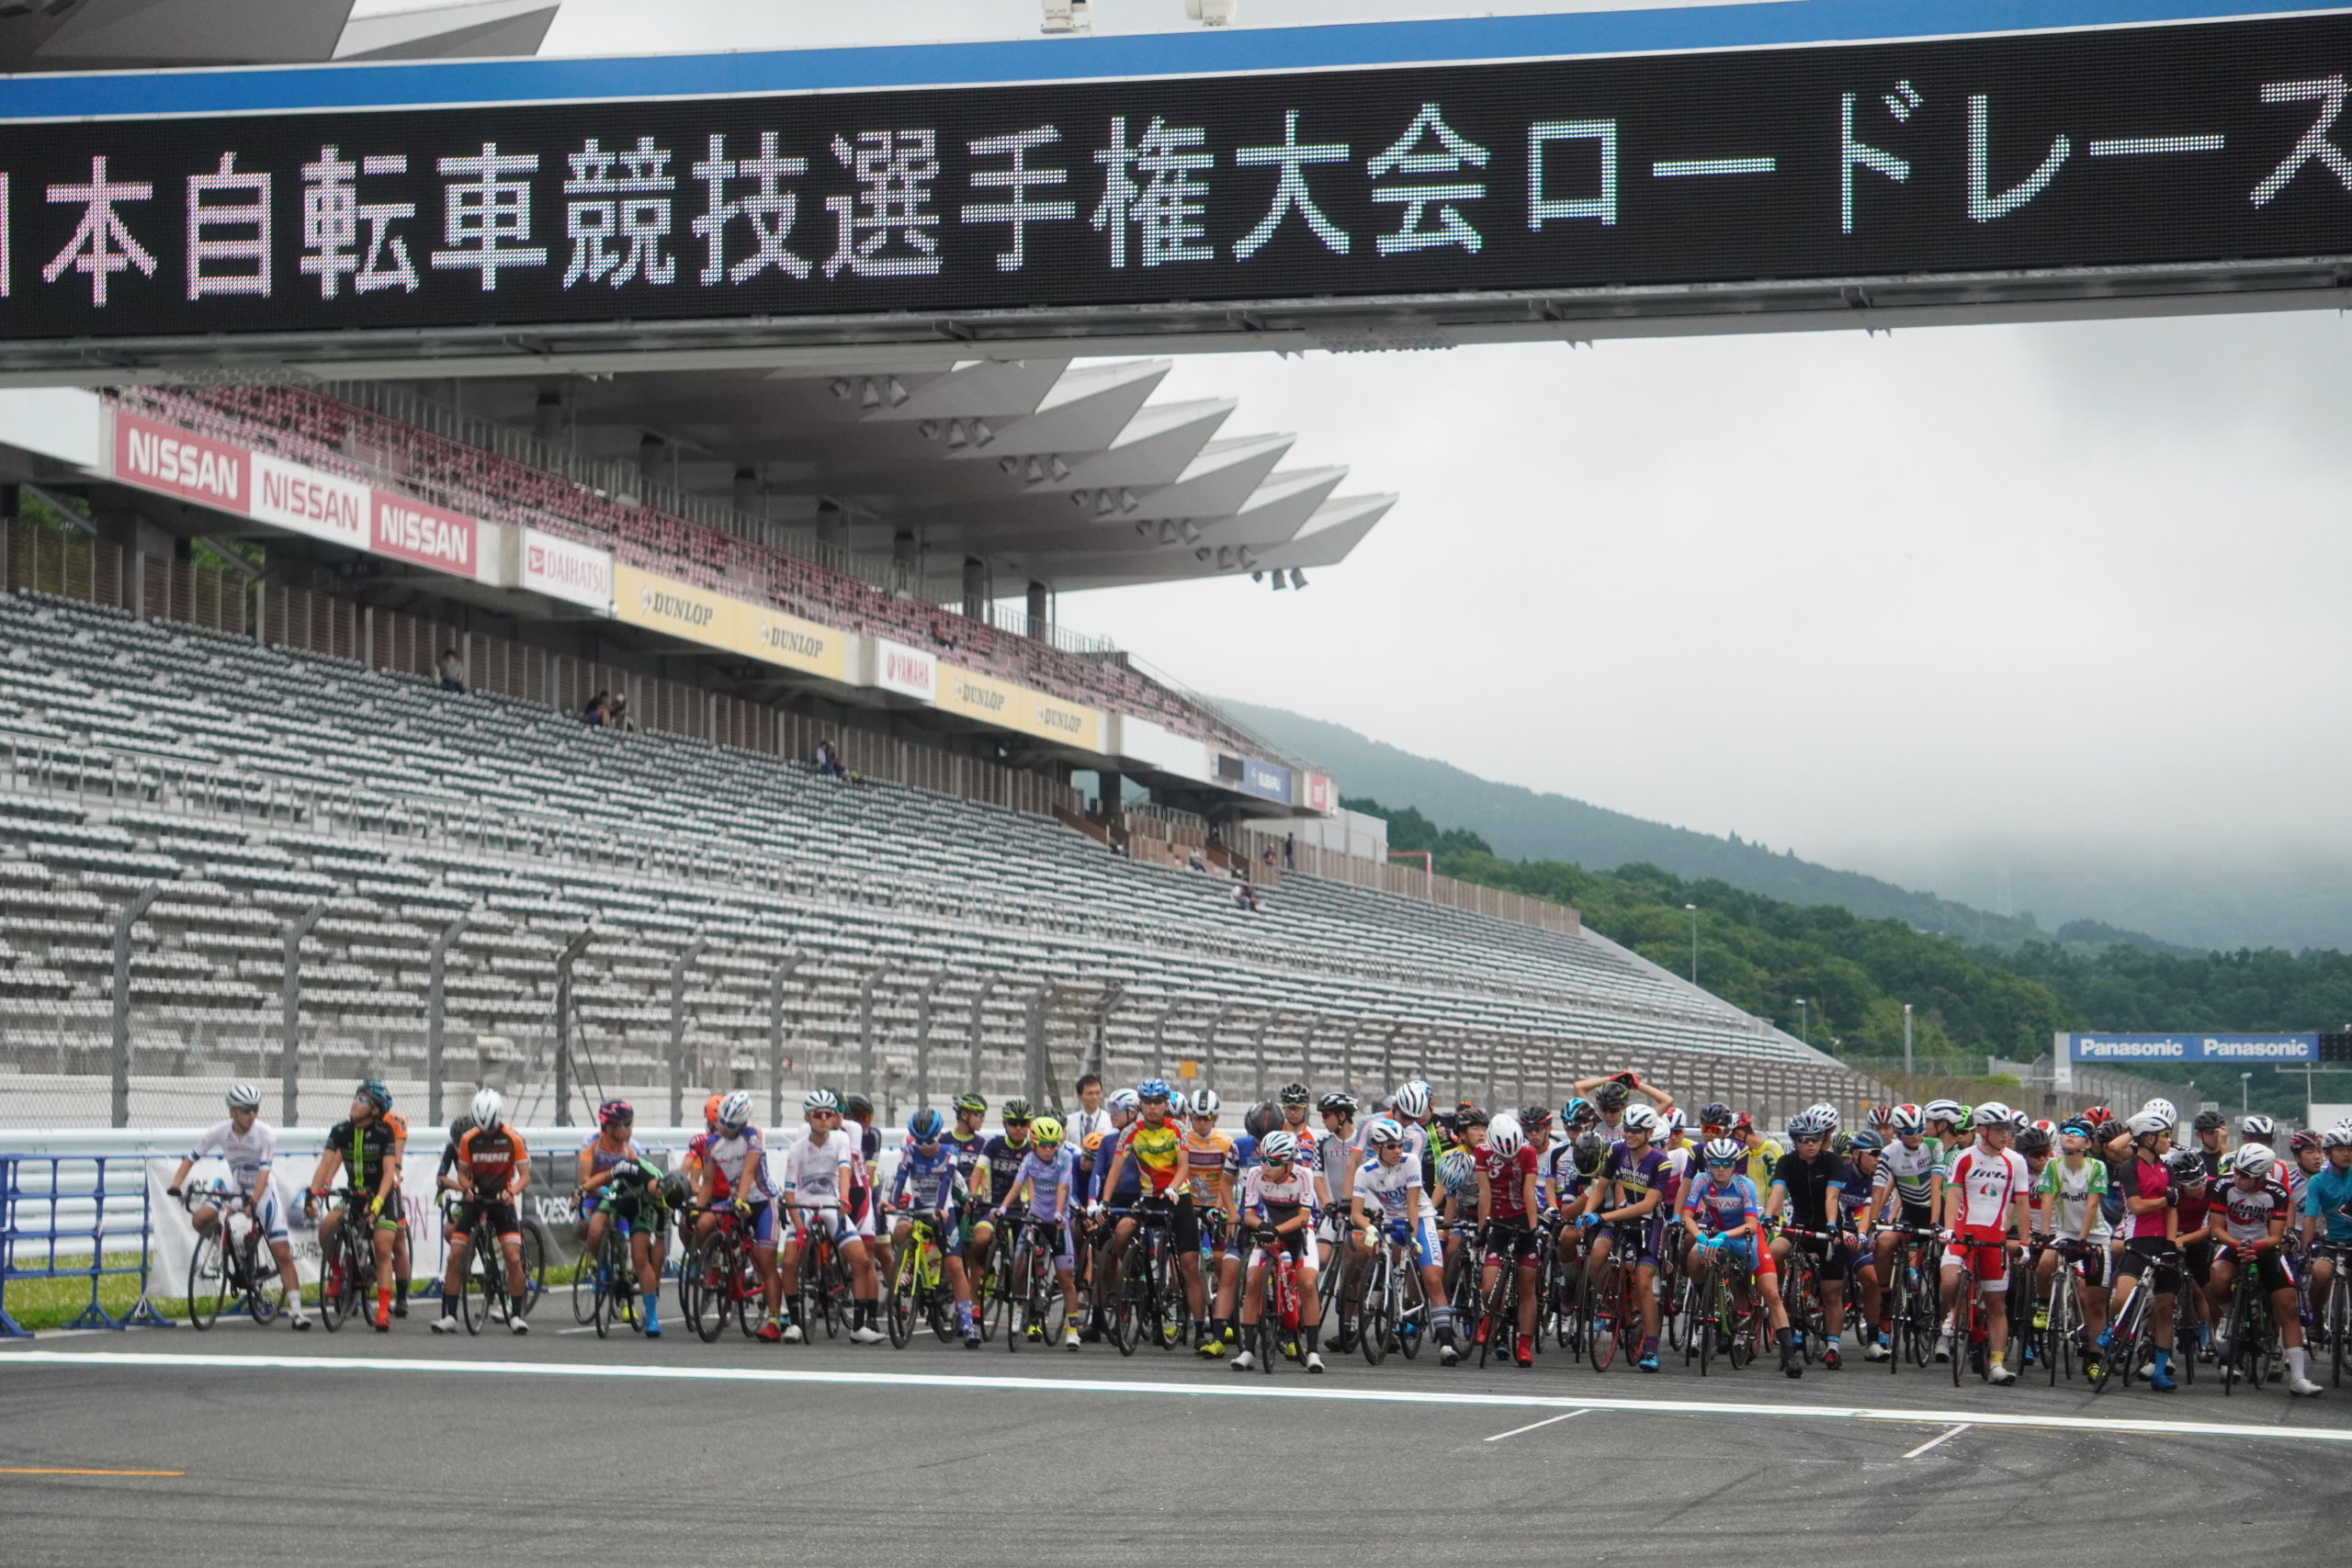 速報 年ロードバイクの日本王者を決める 第回全日本選手権ロードレース の中止が決定 速報 年ロード バイクの日本王者を決める 第回全日本選手権ロードレース の中止が決定